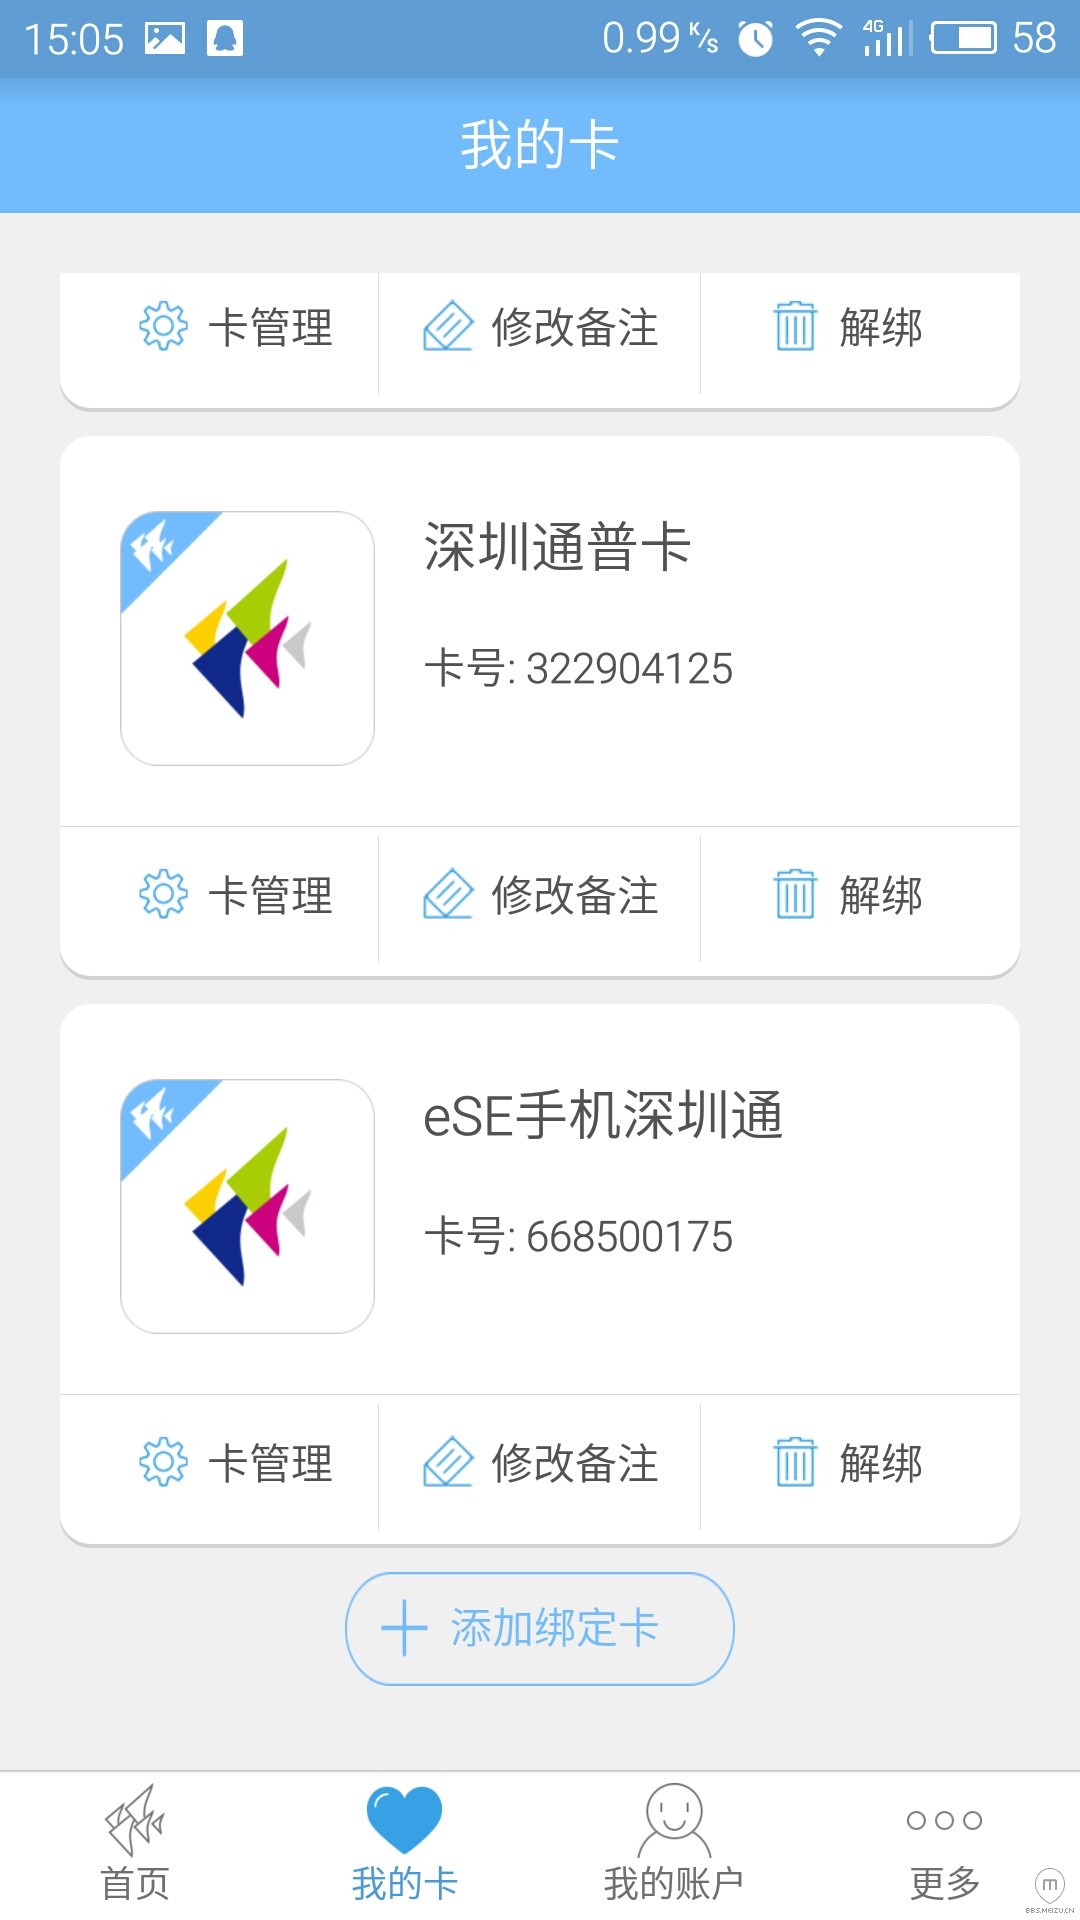 魅族成为第一款支持NFC手机深圳通的国产手